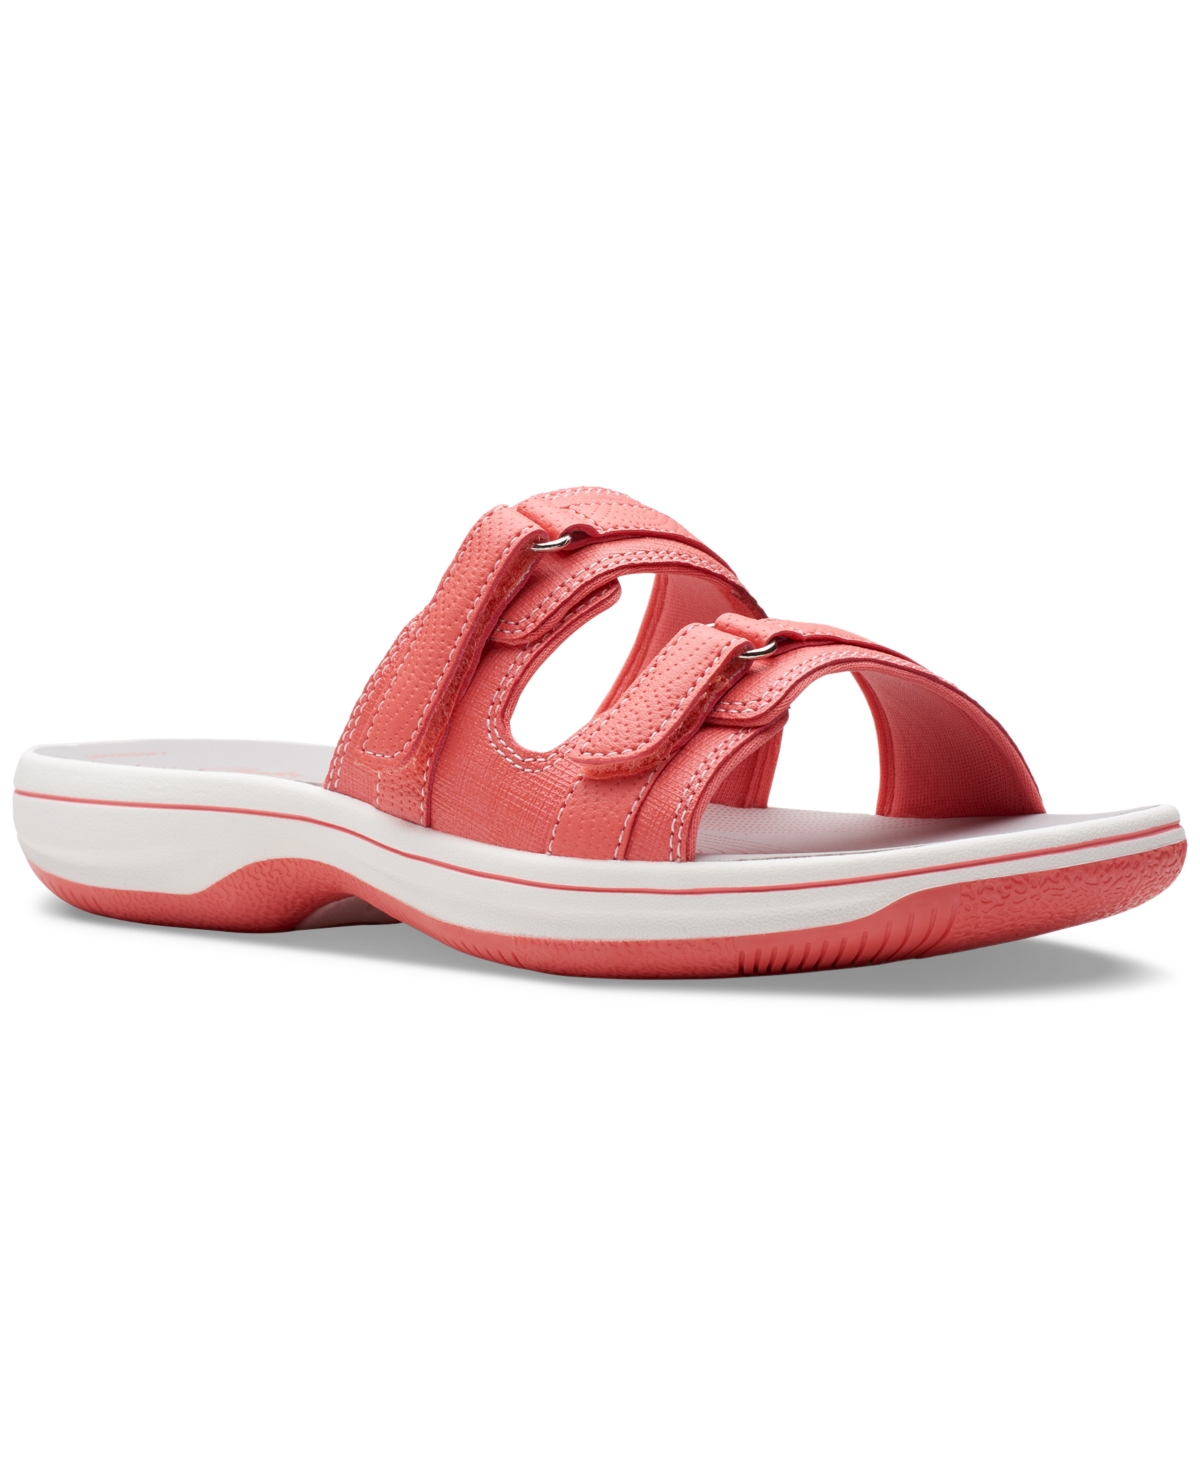 Clarks Women's Cloudsteppers Breeze Piper Comfort Slide Sandals In Coral